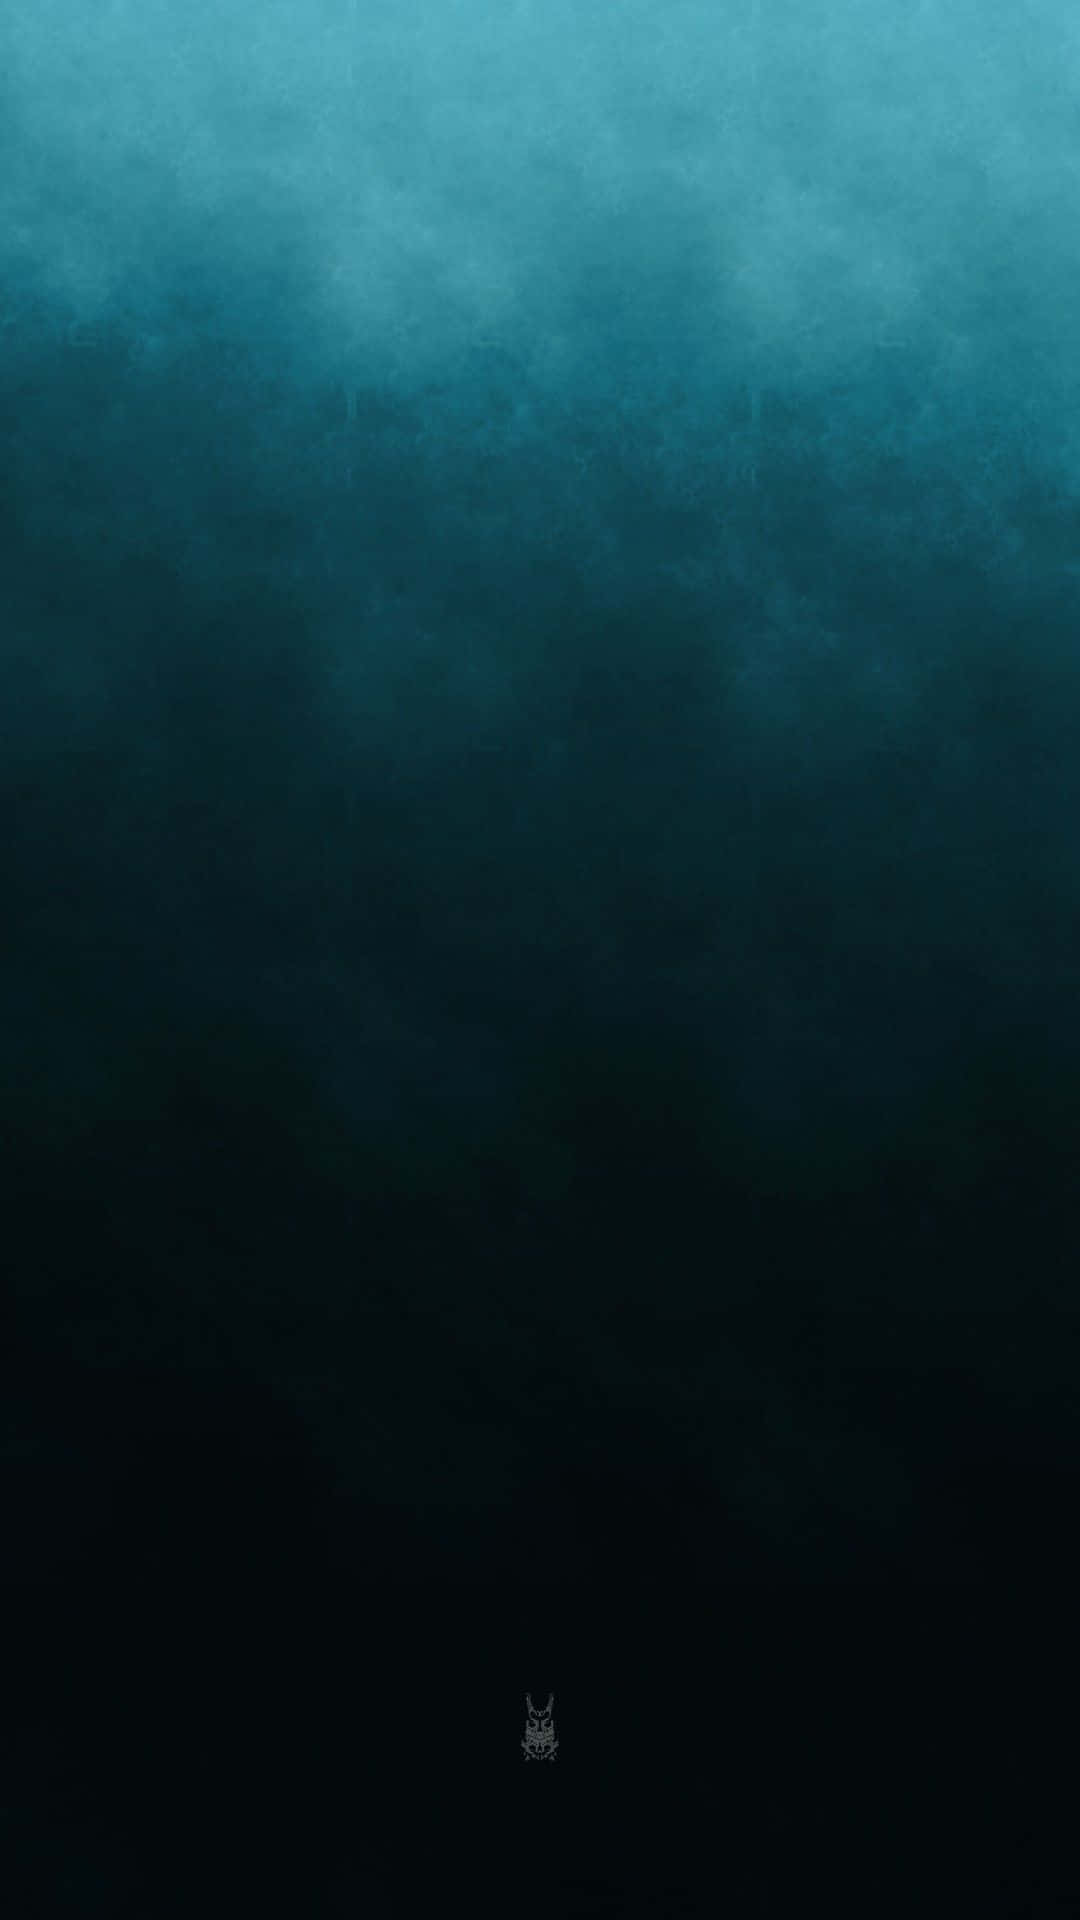 Einblauer Und Schwarzer Hintergrund Mit Den Worten 'das Meer'.